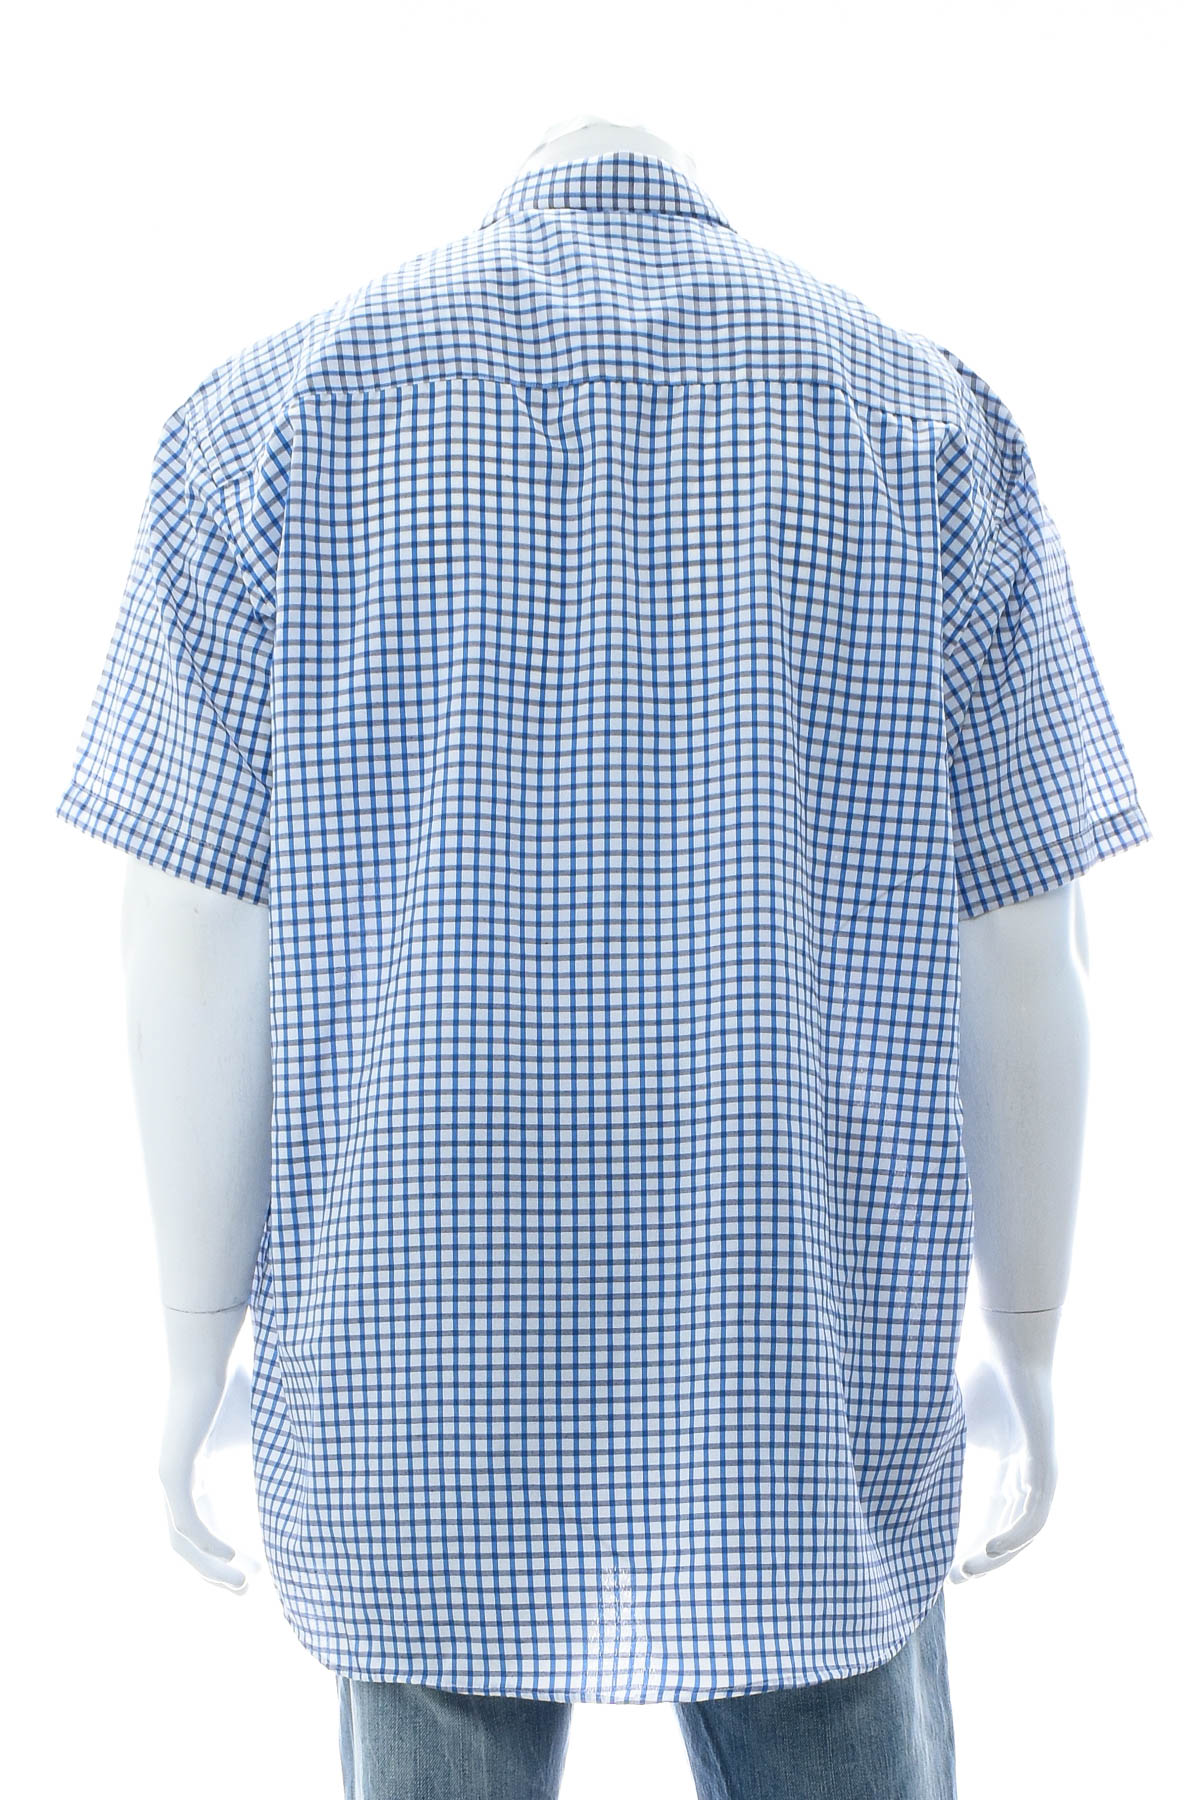 Ανδρικό πουκάμισο - Charles Rene - 1